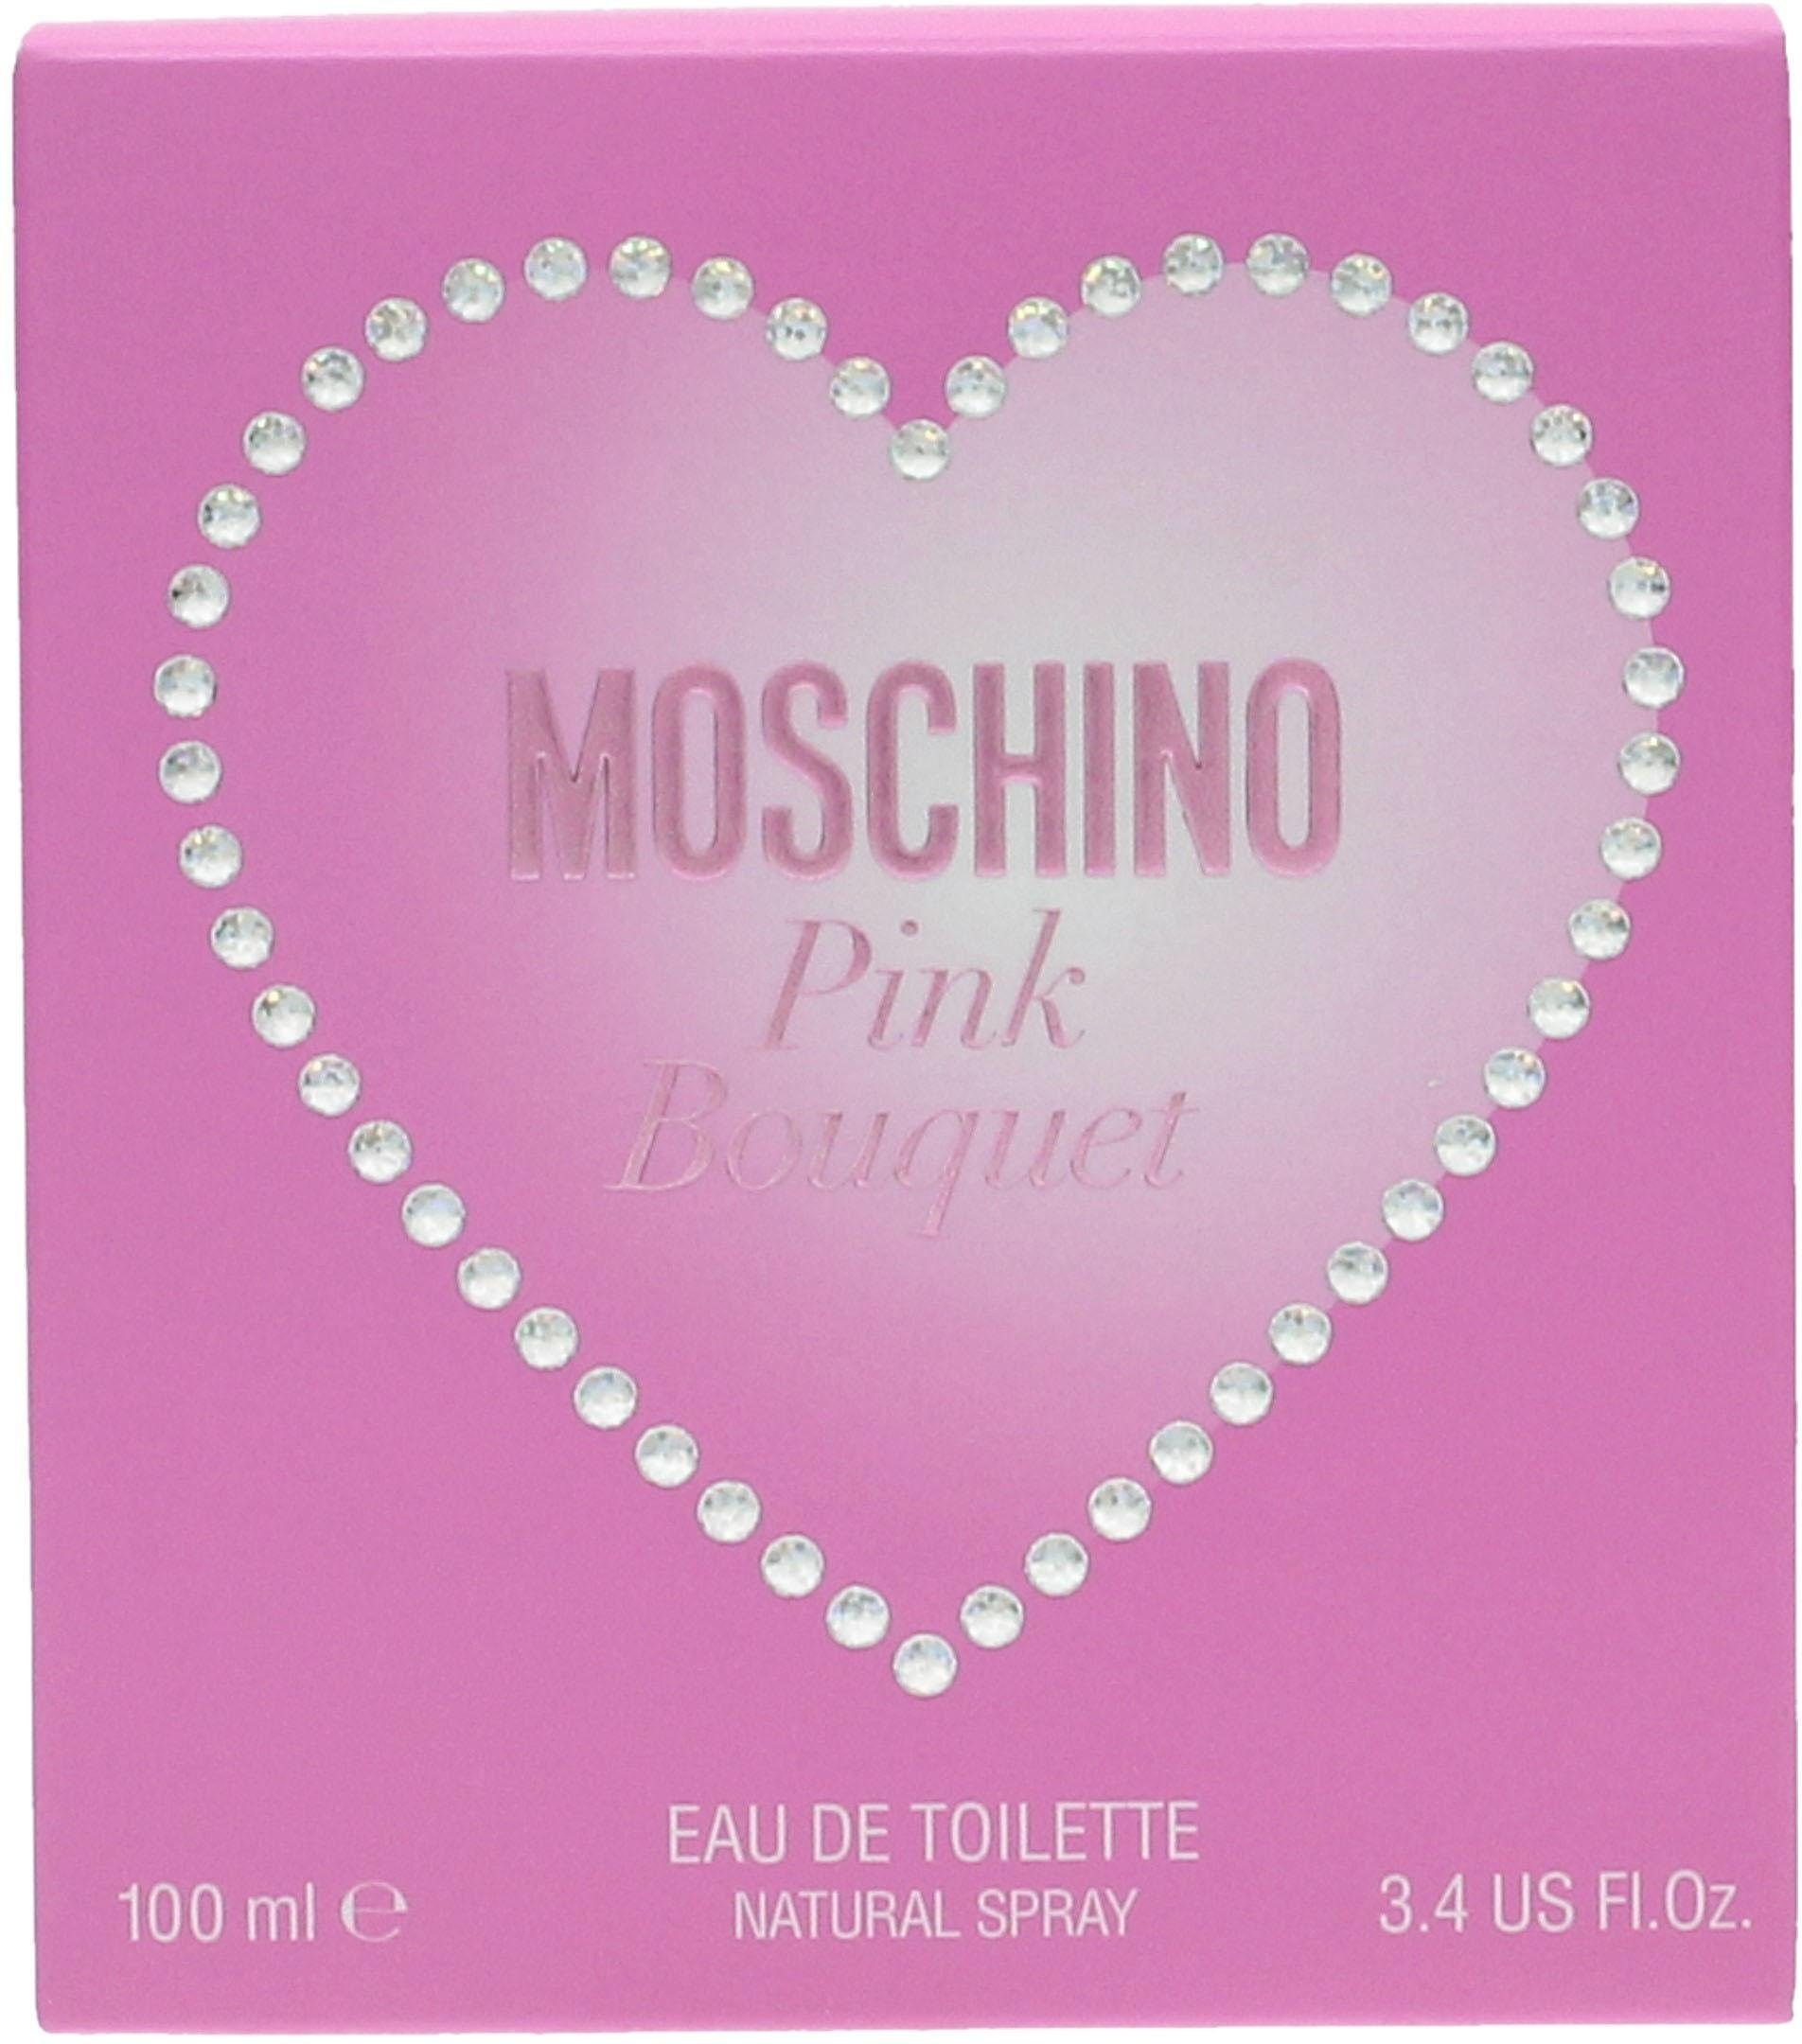 Bouquet Moschino de Toilette Pink Eau